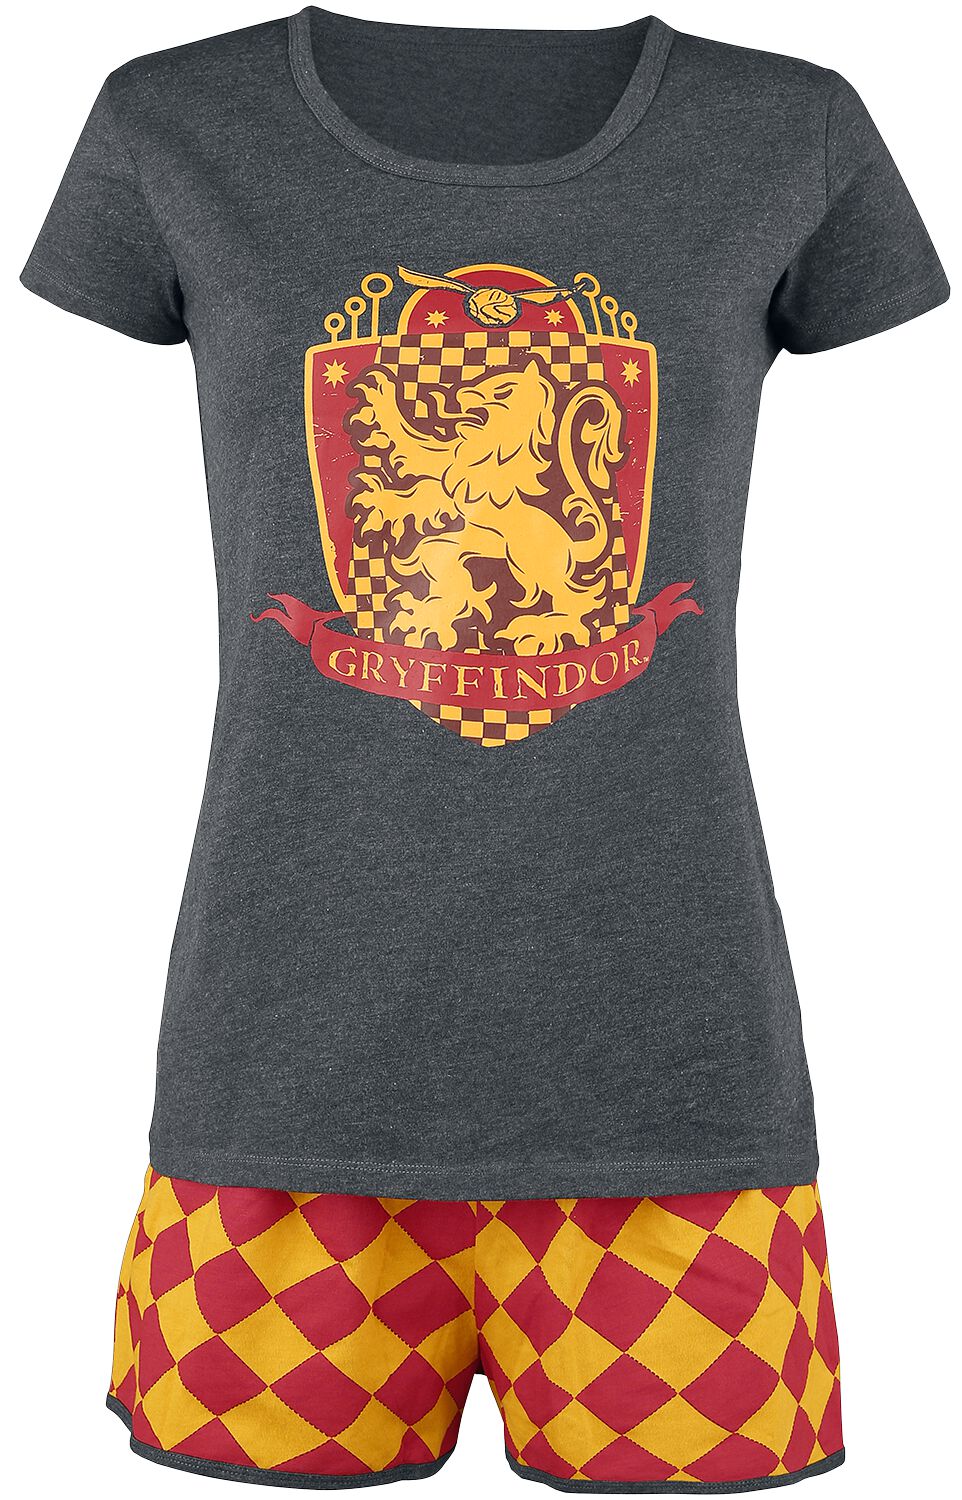 Harry Potter Schlafanzug - Gryffindor Quidditch - XS bis 5XL - für Damen - Größe XS - grau/rot/gelb  - EMP exklusives Merchandise!